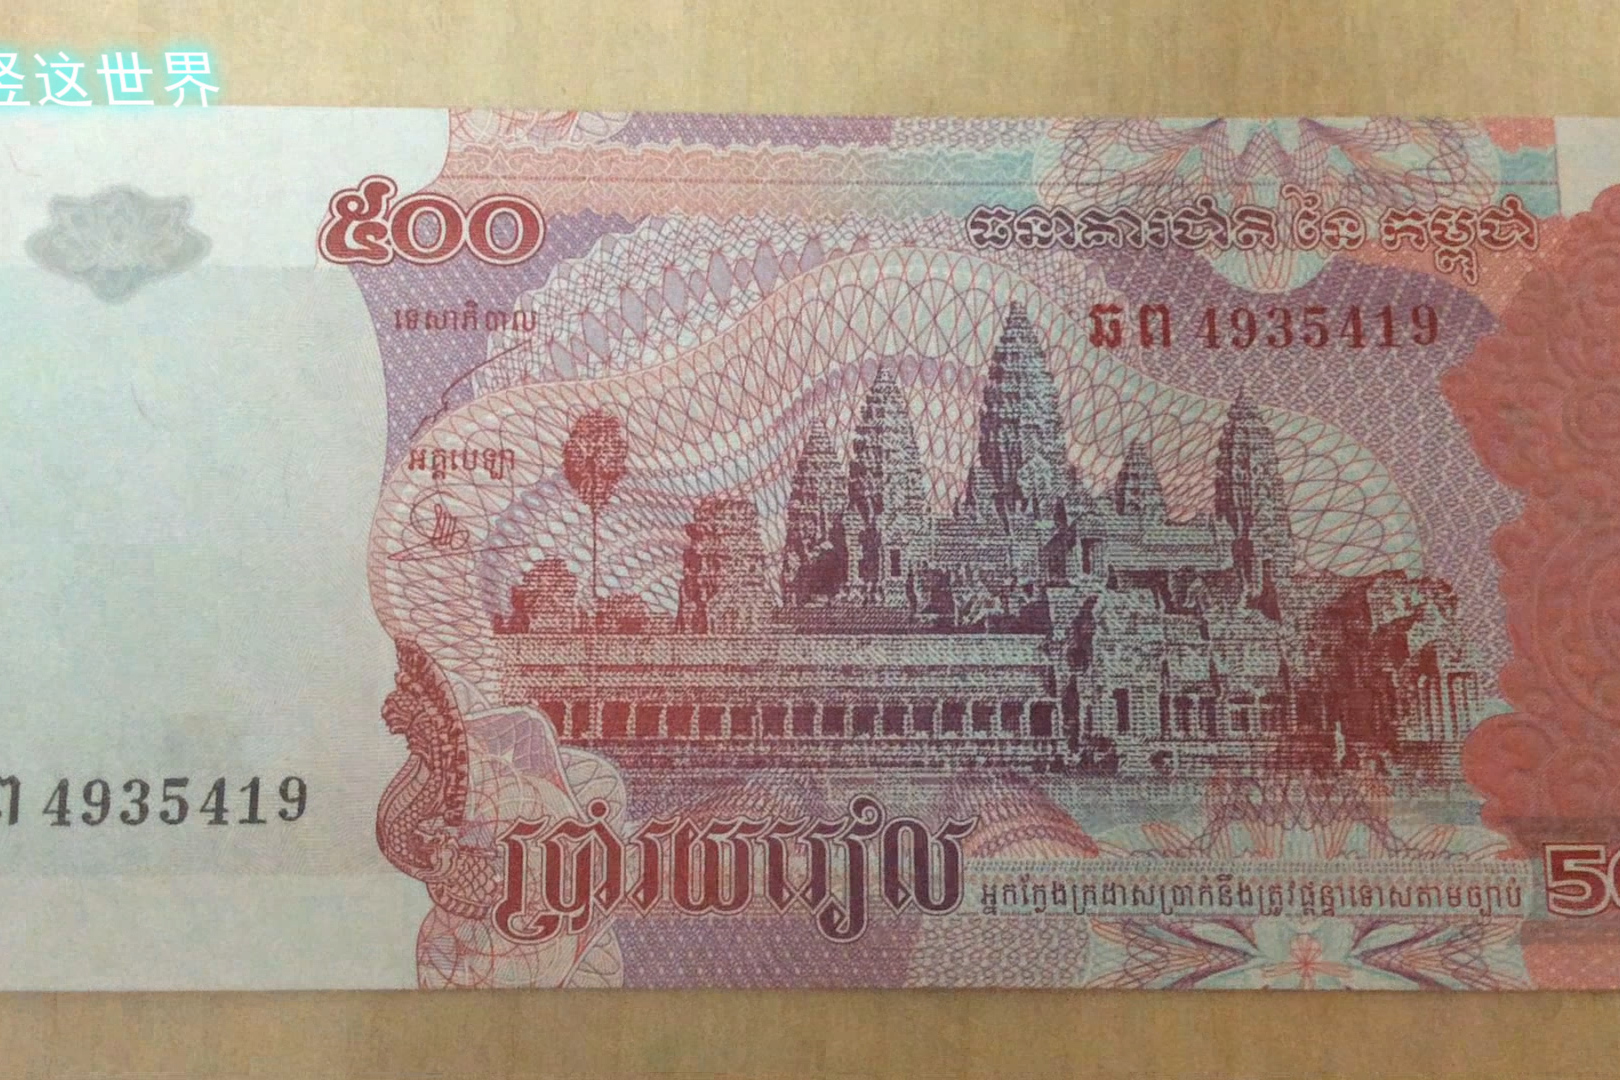 柬埔寨的货币500瑞尔告诉你该国的国宝